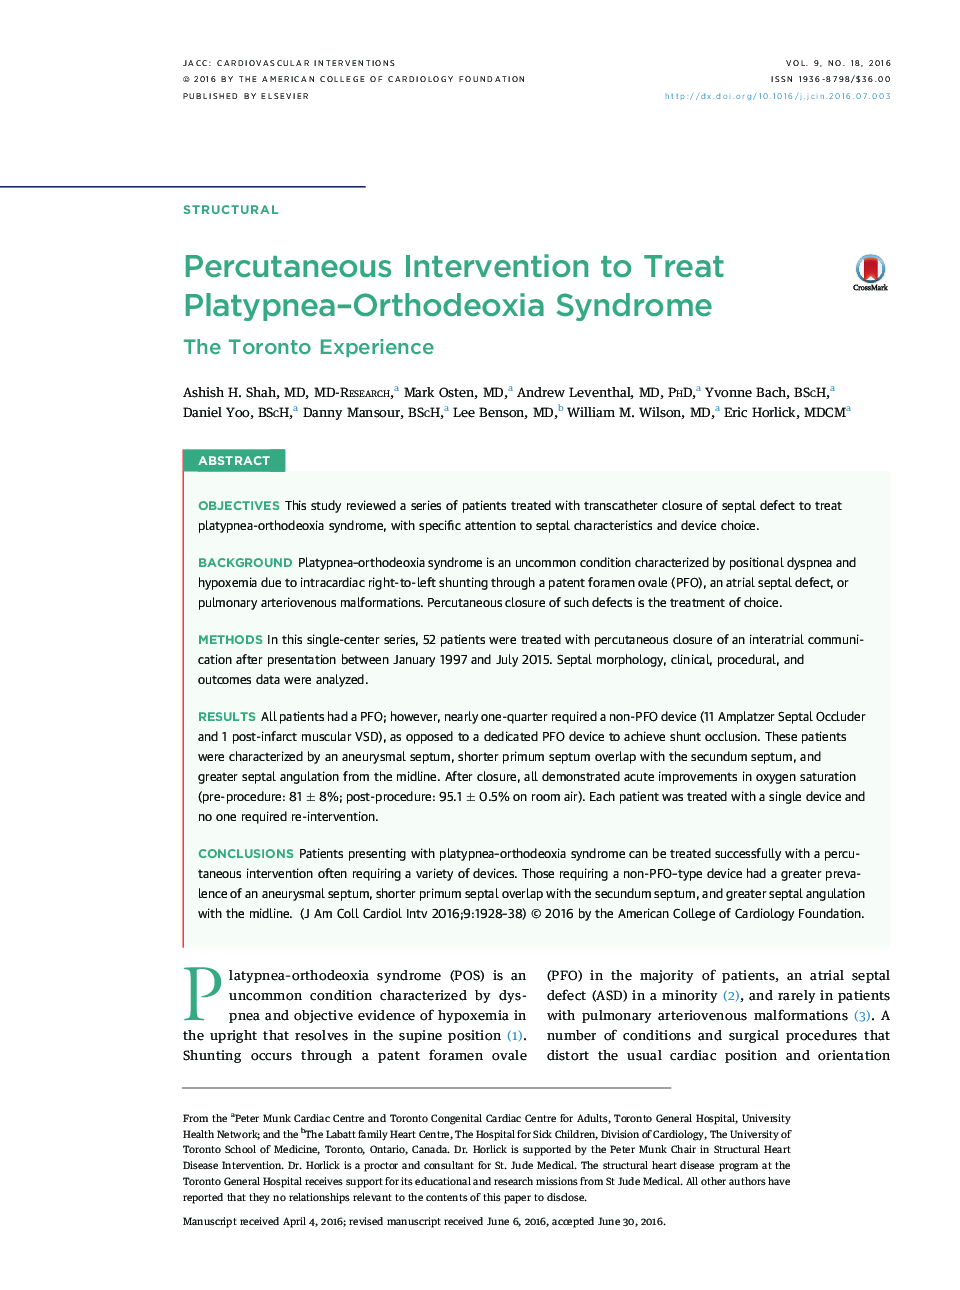 Percutaneous Intervention to Treat Platypnea-Orthodeoxia Syndrome